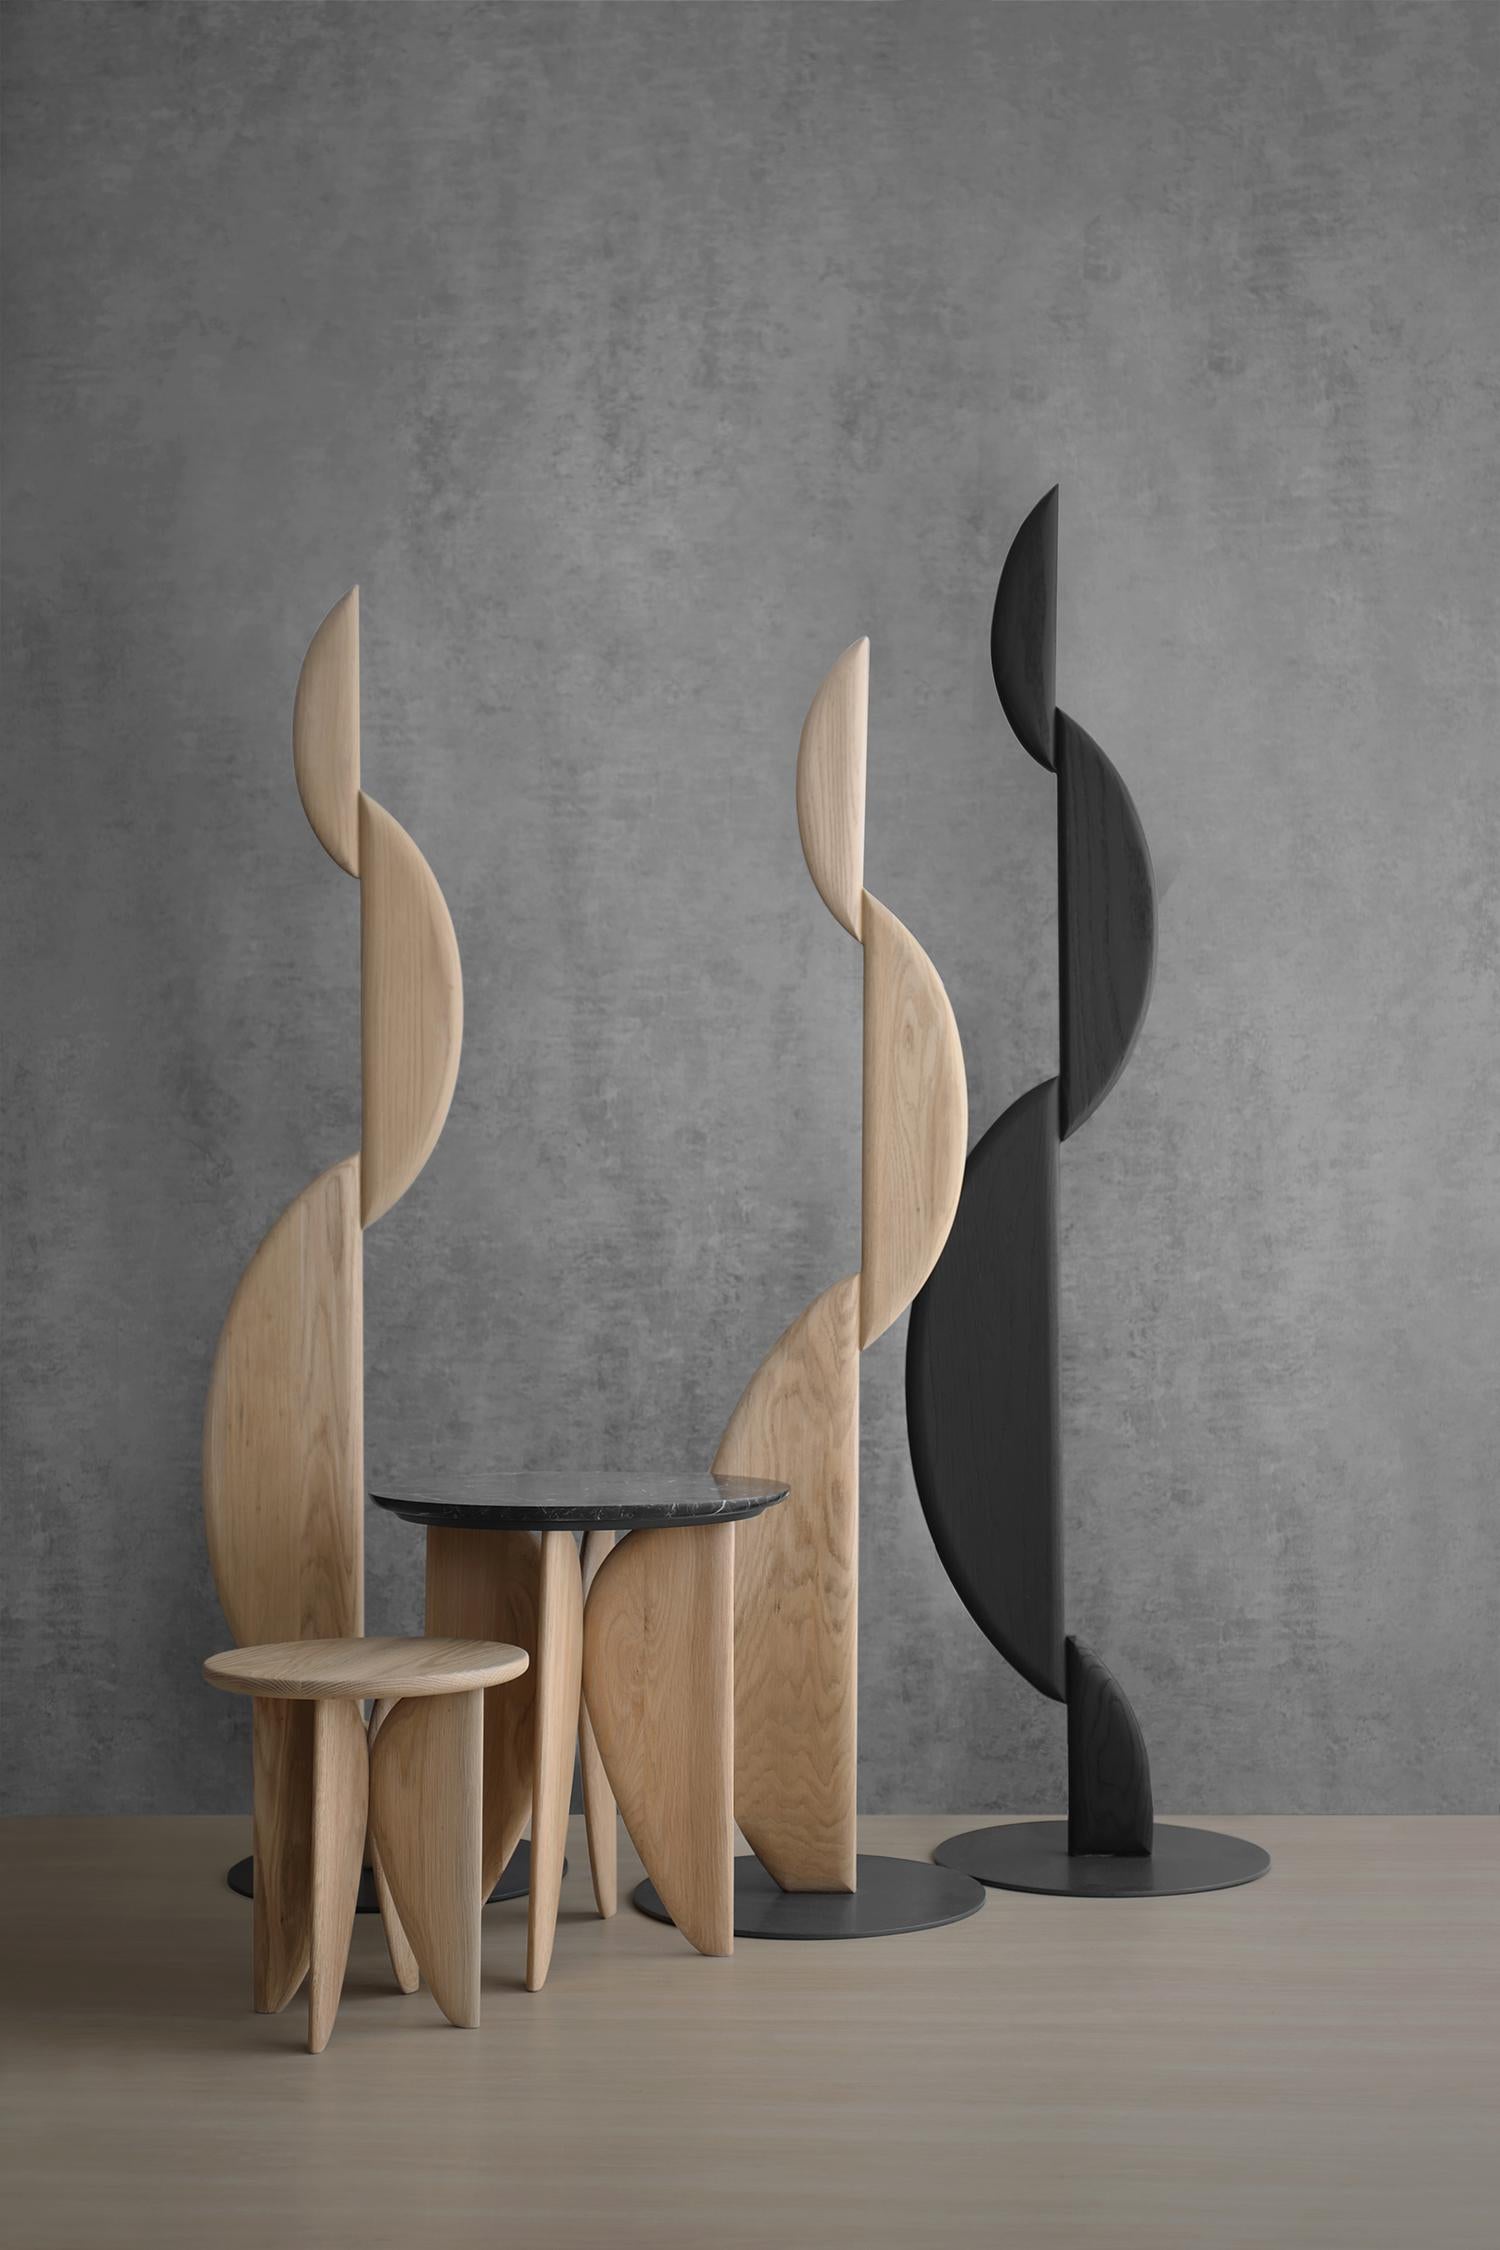 La II- Segunda Sculpture fait partie de la collection Noviembre, qui propose une gamme de meubles fascinante, invitant à explorer la forme, la fonction et les lignes sereines qui définissent chaque pièce. Inspirée par la philosophie artistique de